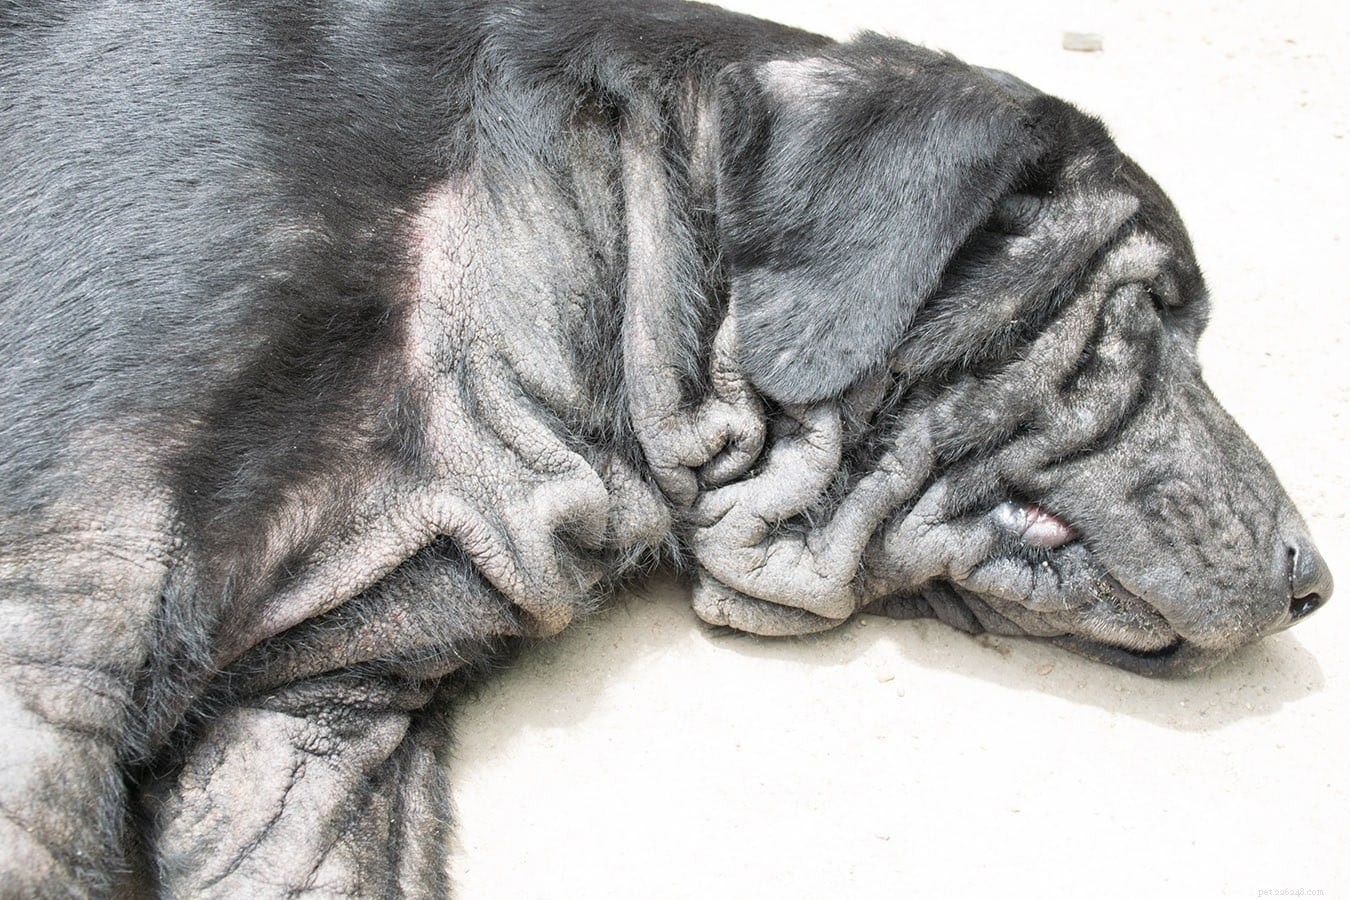 Dermatite da Malassezia (infezioni da lieviti) nei cani:cause, trattamenti, prevenzione